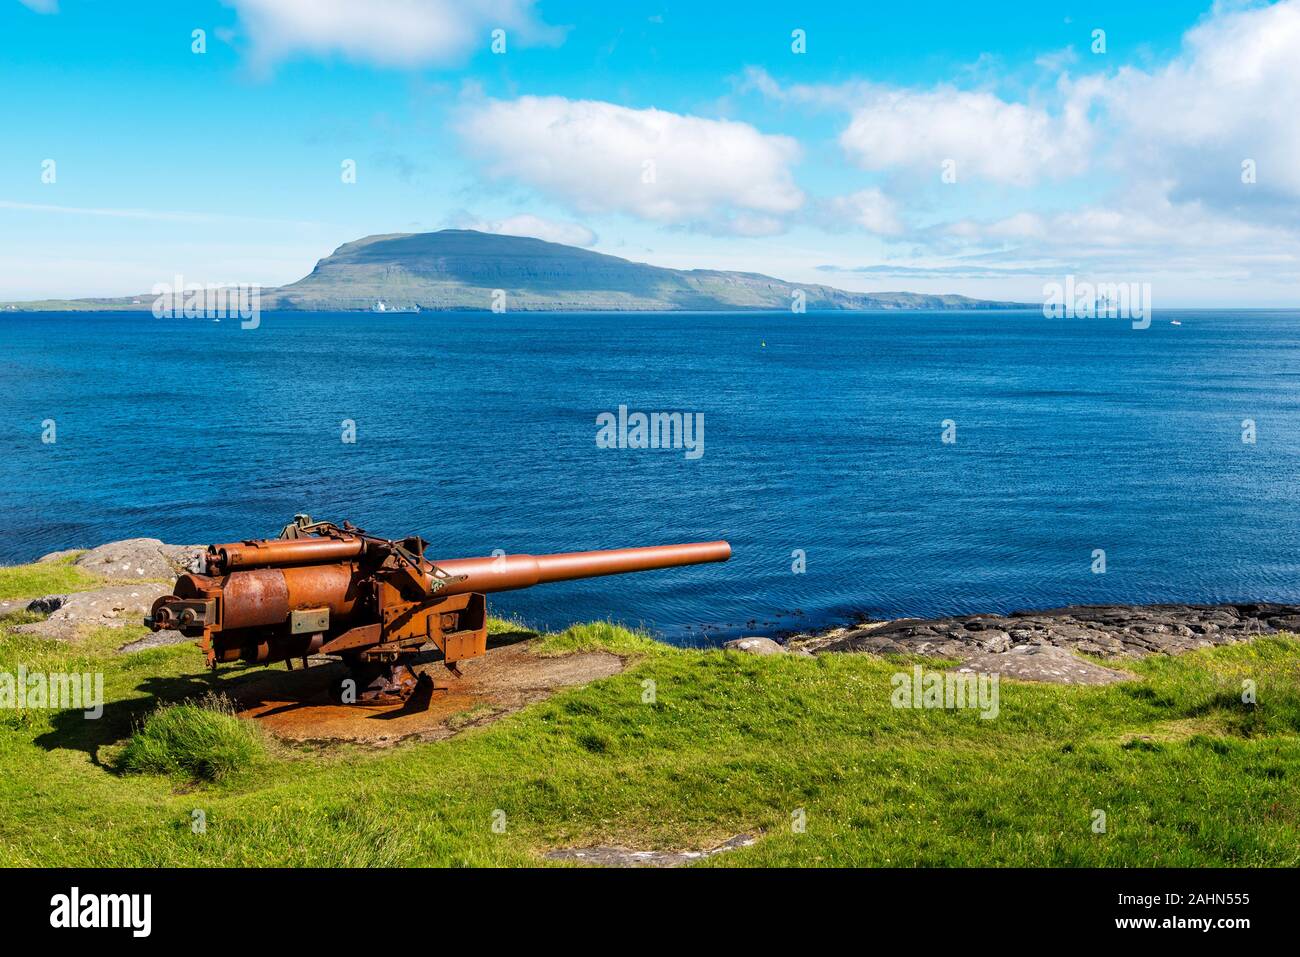 British Gun aus dem Kriegsschiff in Festung Skansin von Torshavn, Färöischen Insel Streymoy. Atlantischen Ozean und die Insel Nolsoy sind im Hintergrund Stockfoto